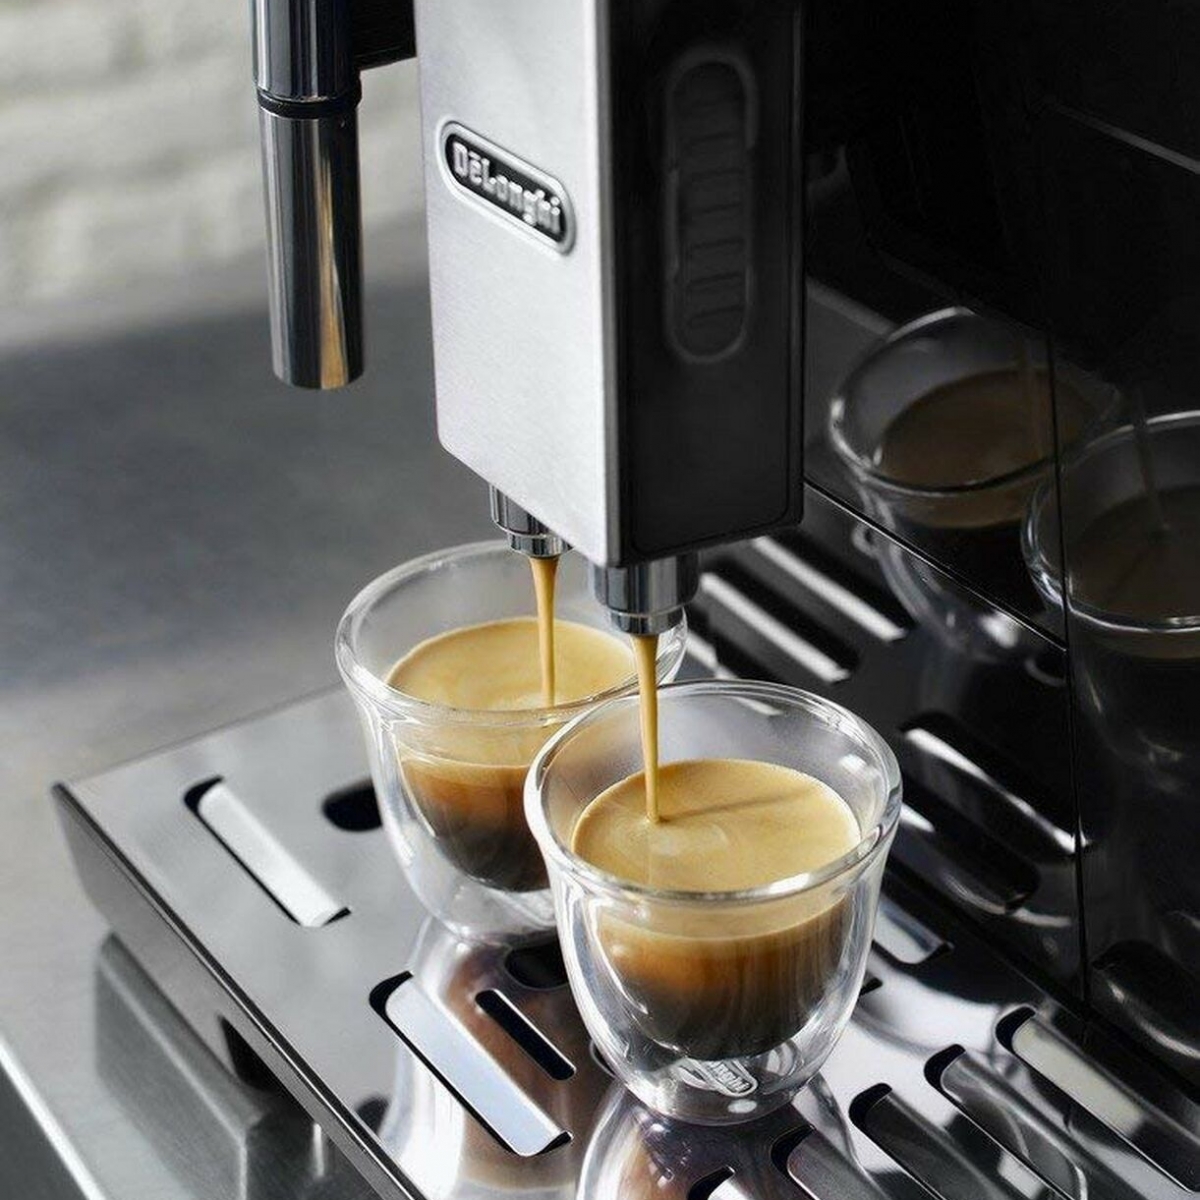 Refurbished DeLonghi Eletta Cappuccino in White ECAM44660W – Whole Latte  Love